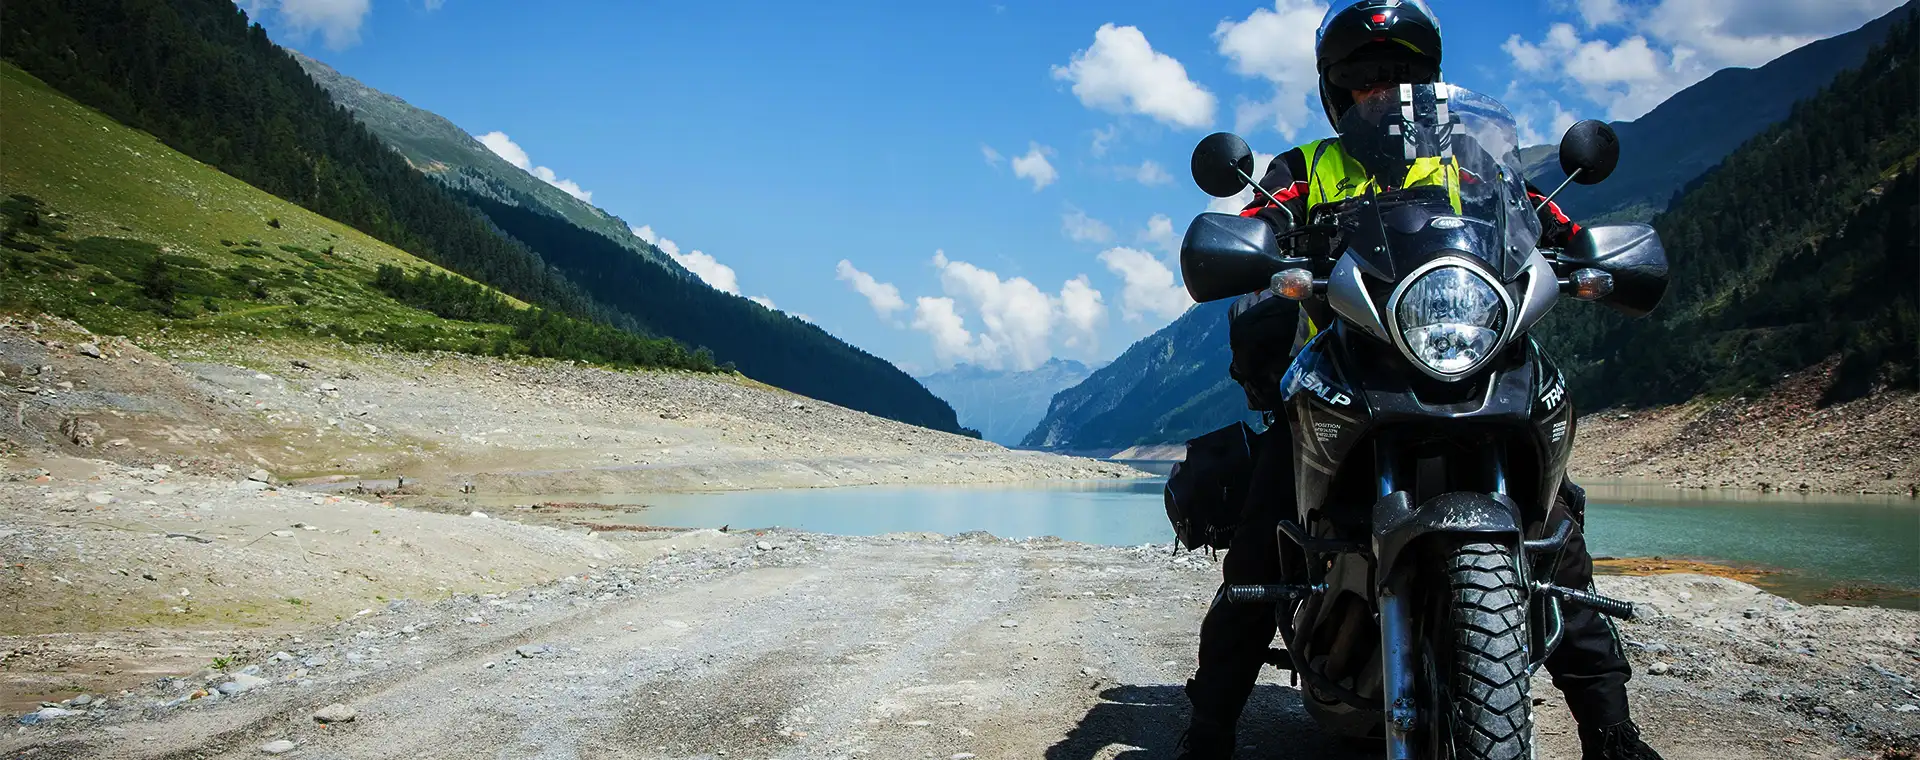 List of Amazing Things to do on Leh Ladakh Bike Trip